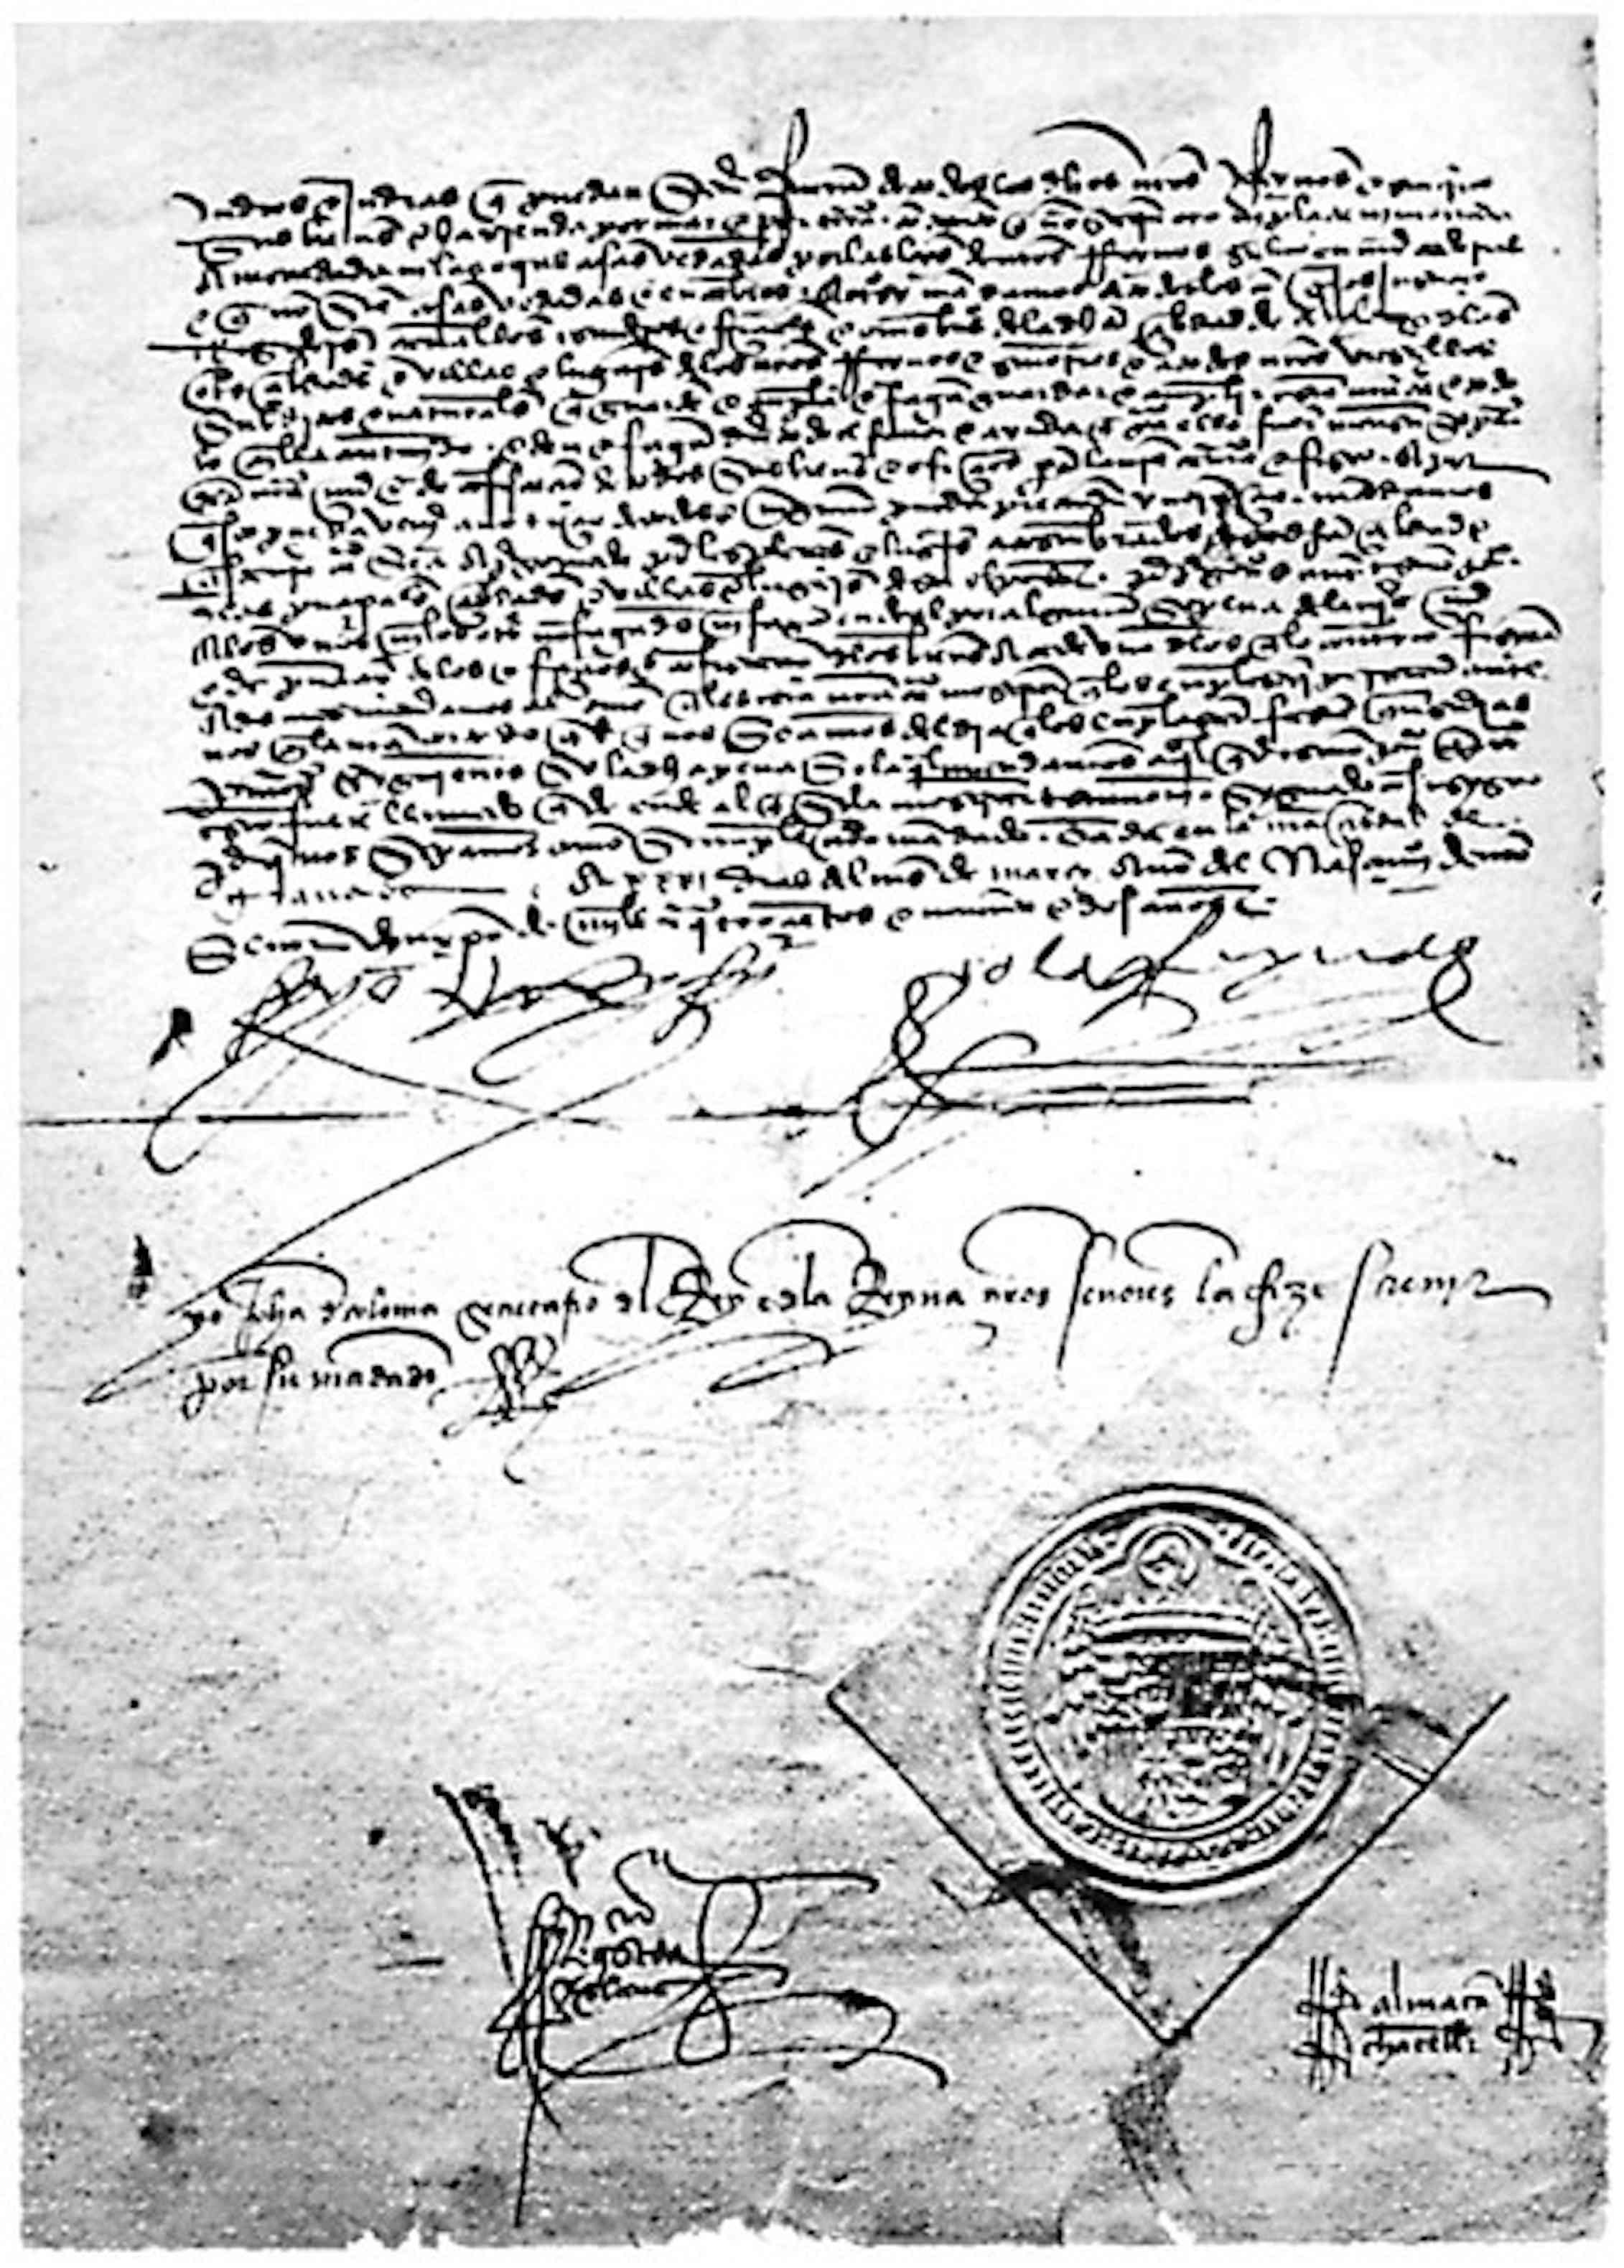 Copia sellada del Edicto de Granada promulgado en la Alhambra el 31 de marzo de 1492 por Fernando II de Aragón e Isabel I de Castilla, según el cual se expulsaba a los judíos de la Corona de Castilla y de la Corona de Aragón. Wikimedia Commons